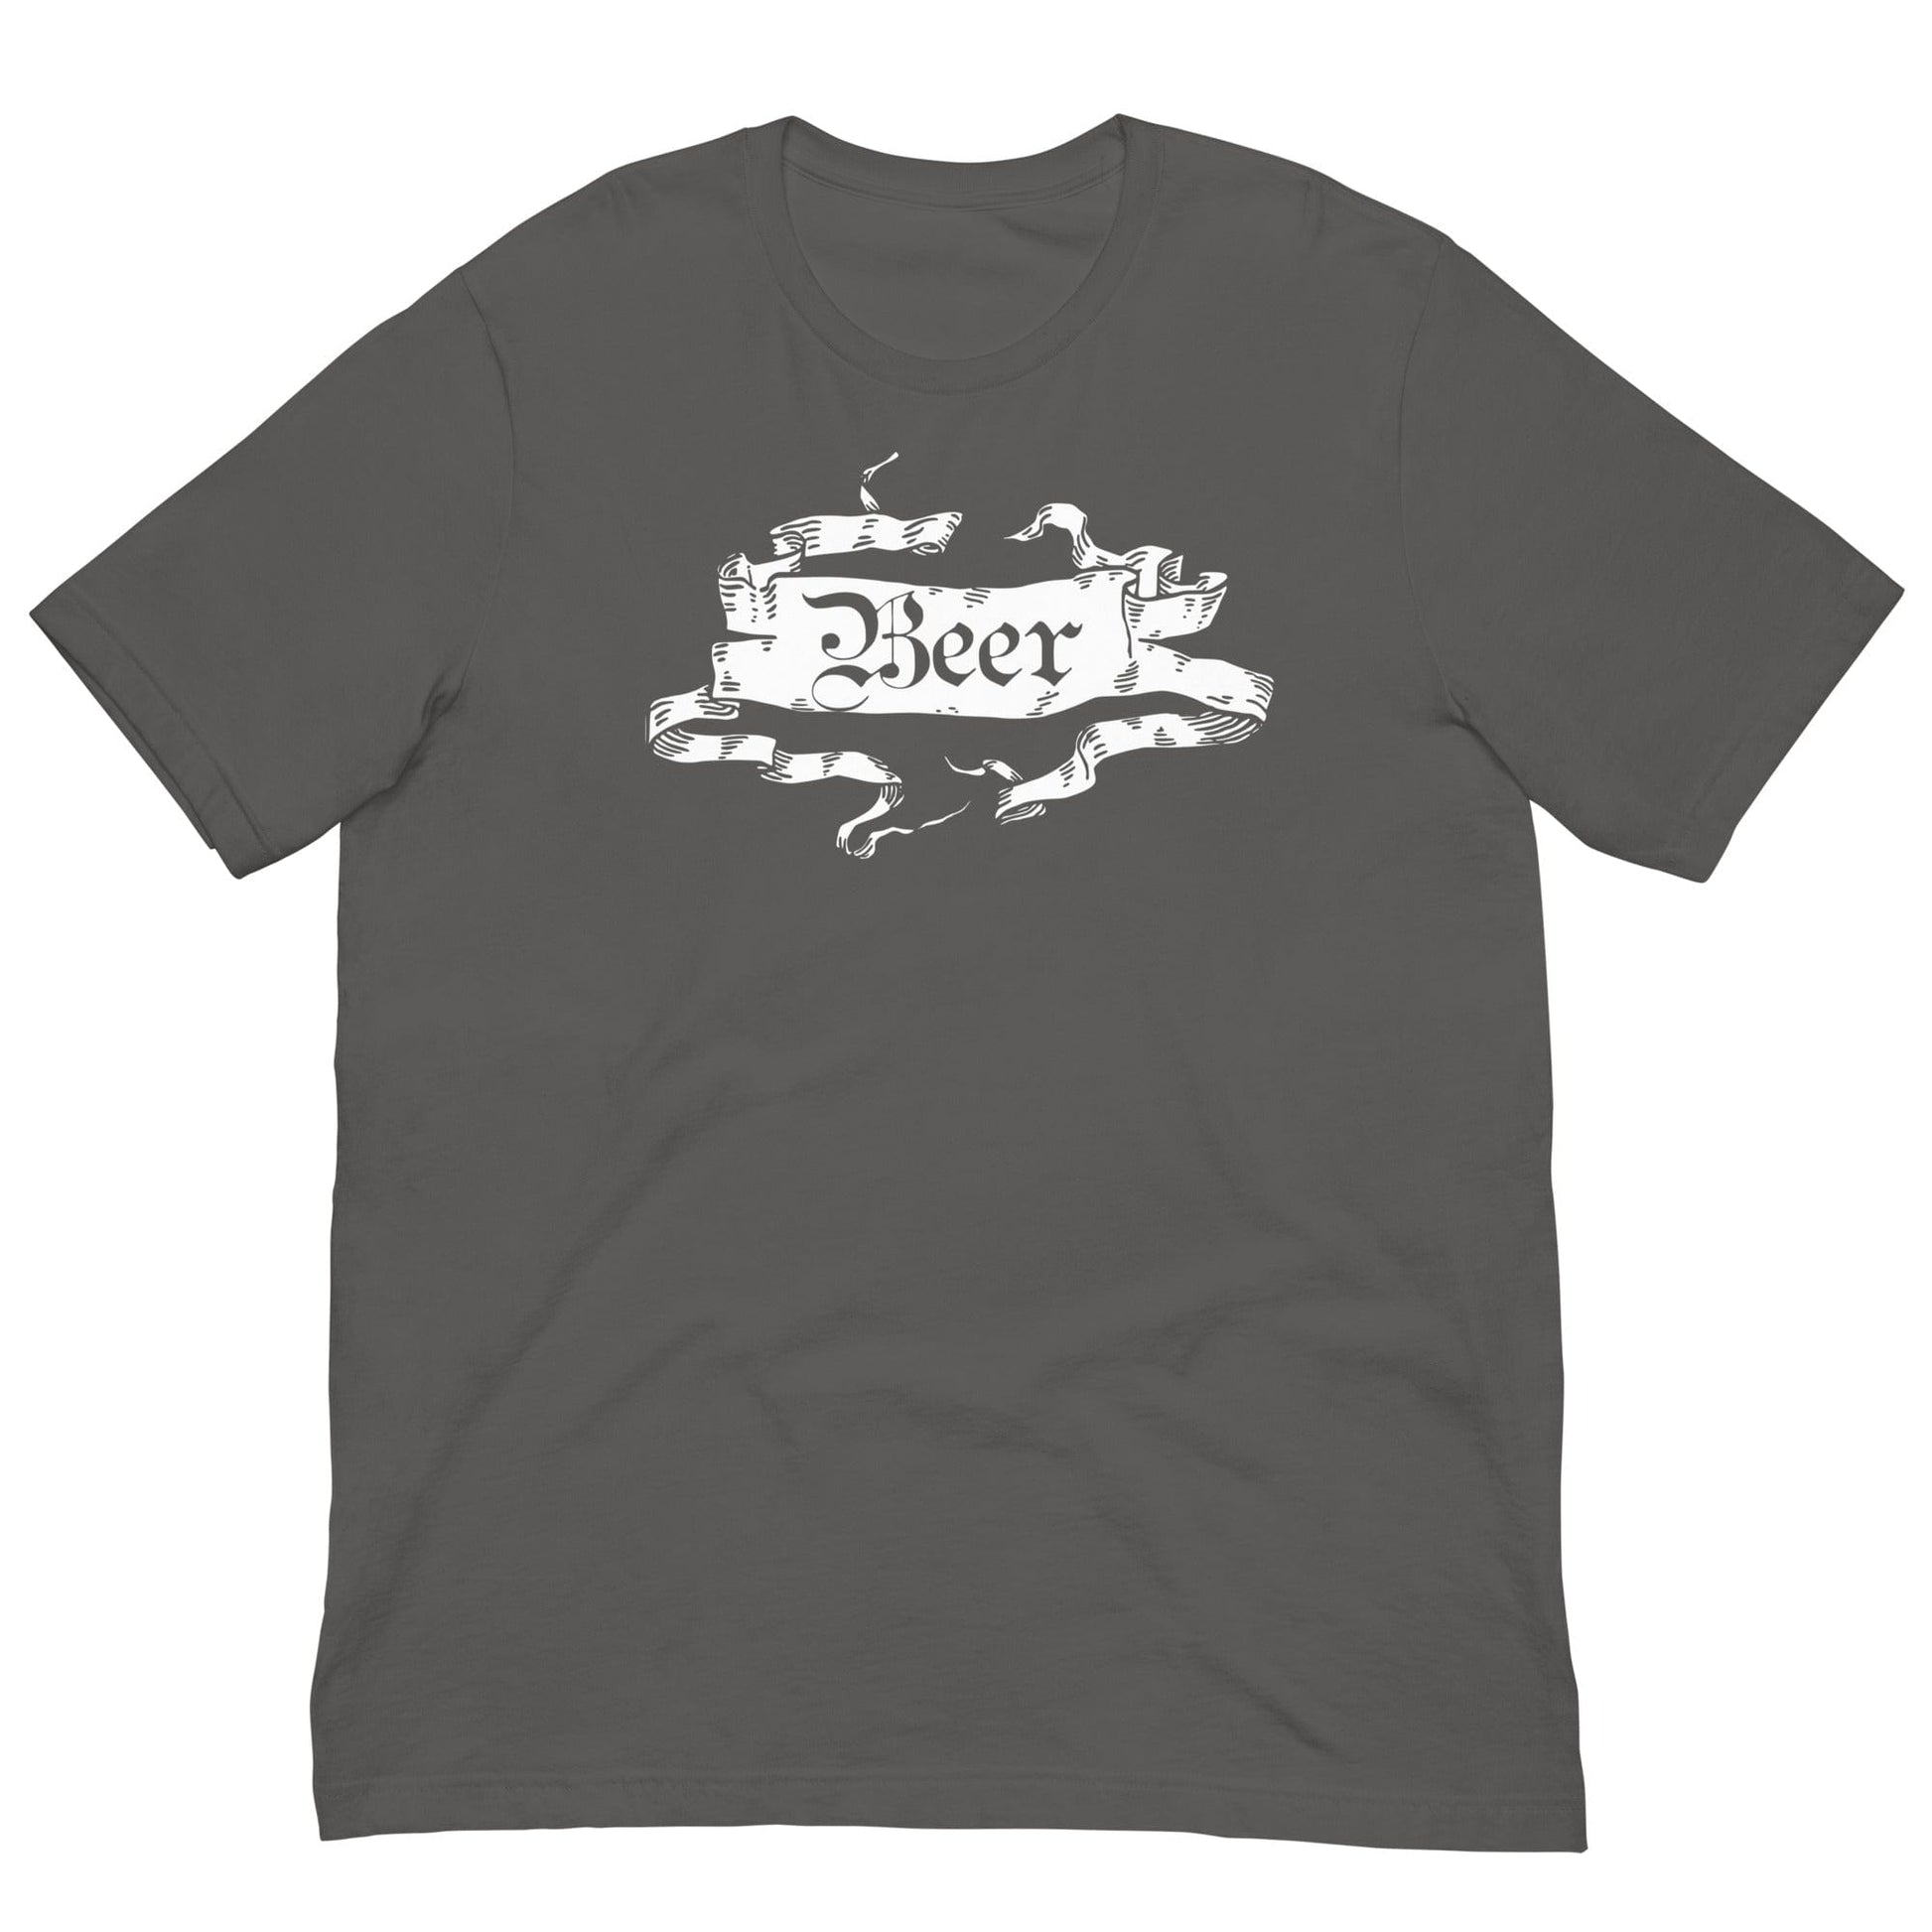 Medieval Beer T-shirt Asphalt / S